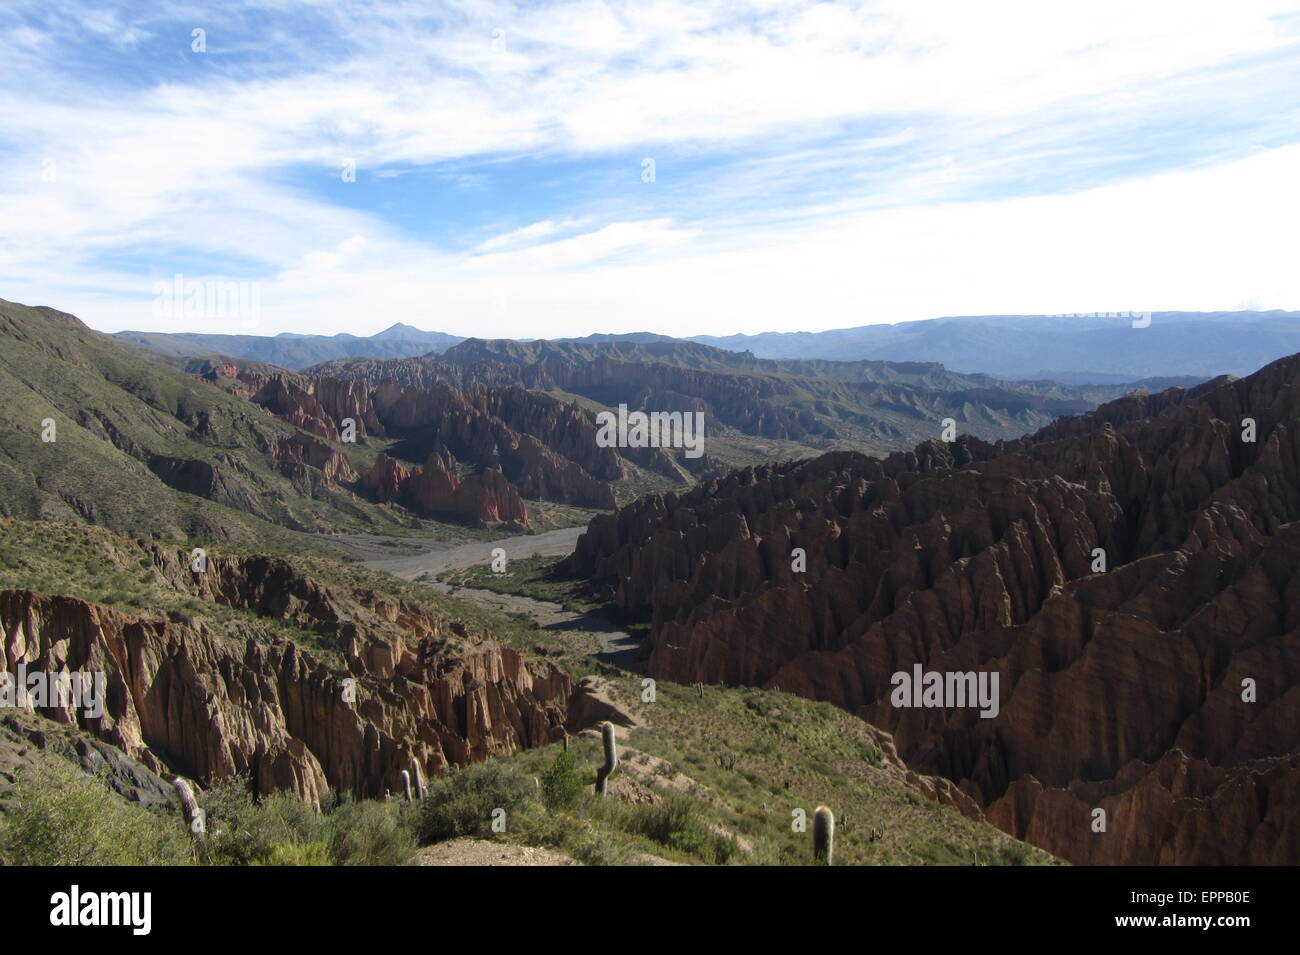 Berge von Bolivien, Altiplano, Wüste und grüne Landschaften, Bäume und Felsen, Sand, Himmel und Erde. Schöne Aussicht Stockfoto